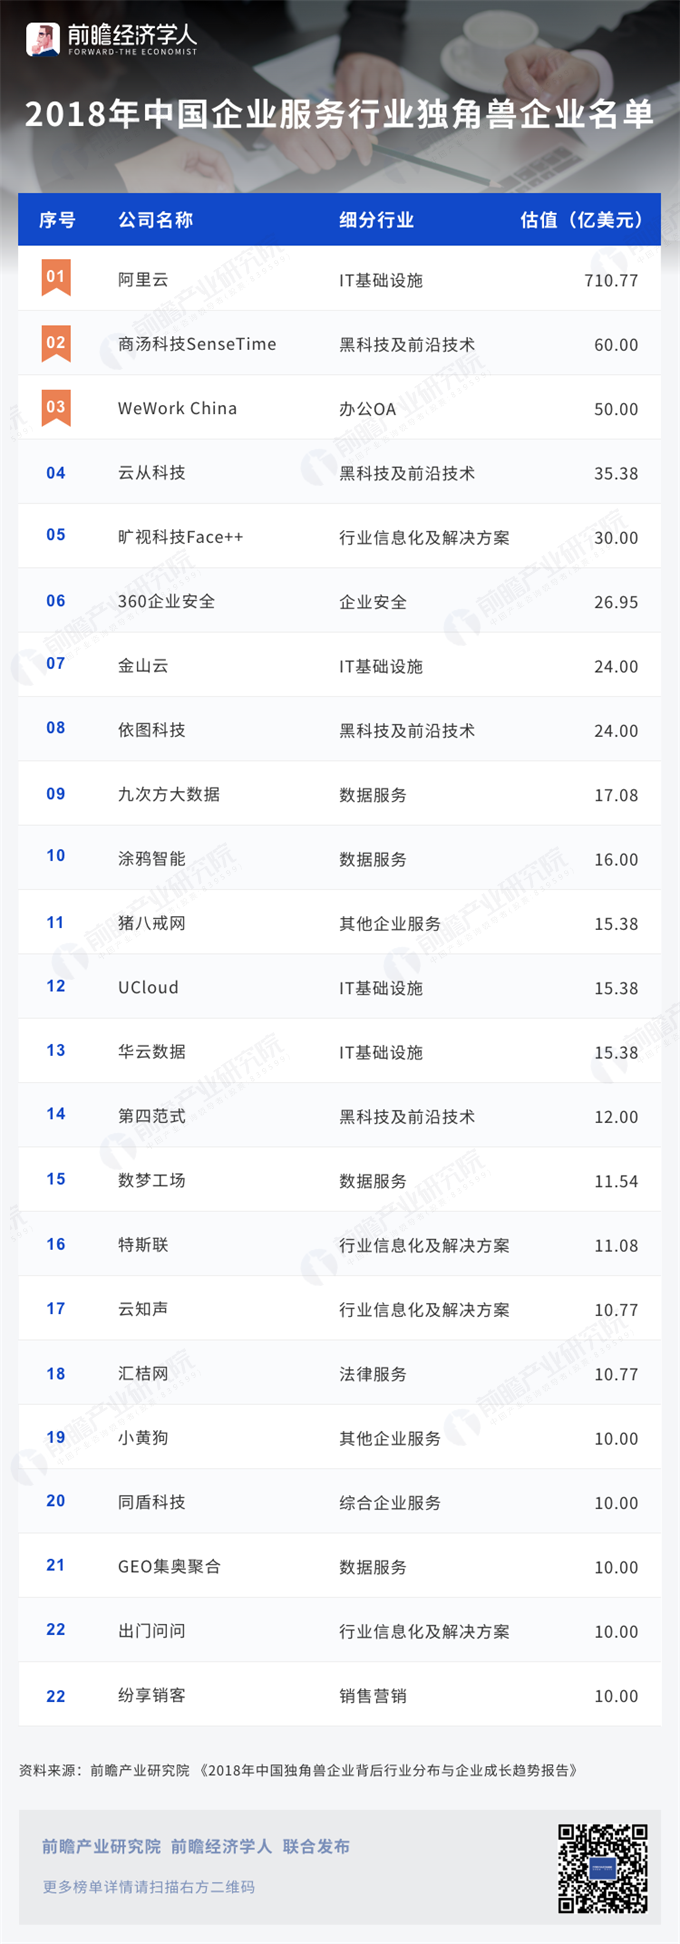 2018中国企业服务行业独角兽企业名单